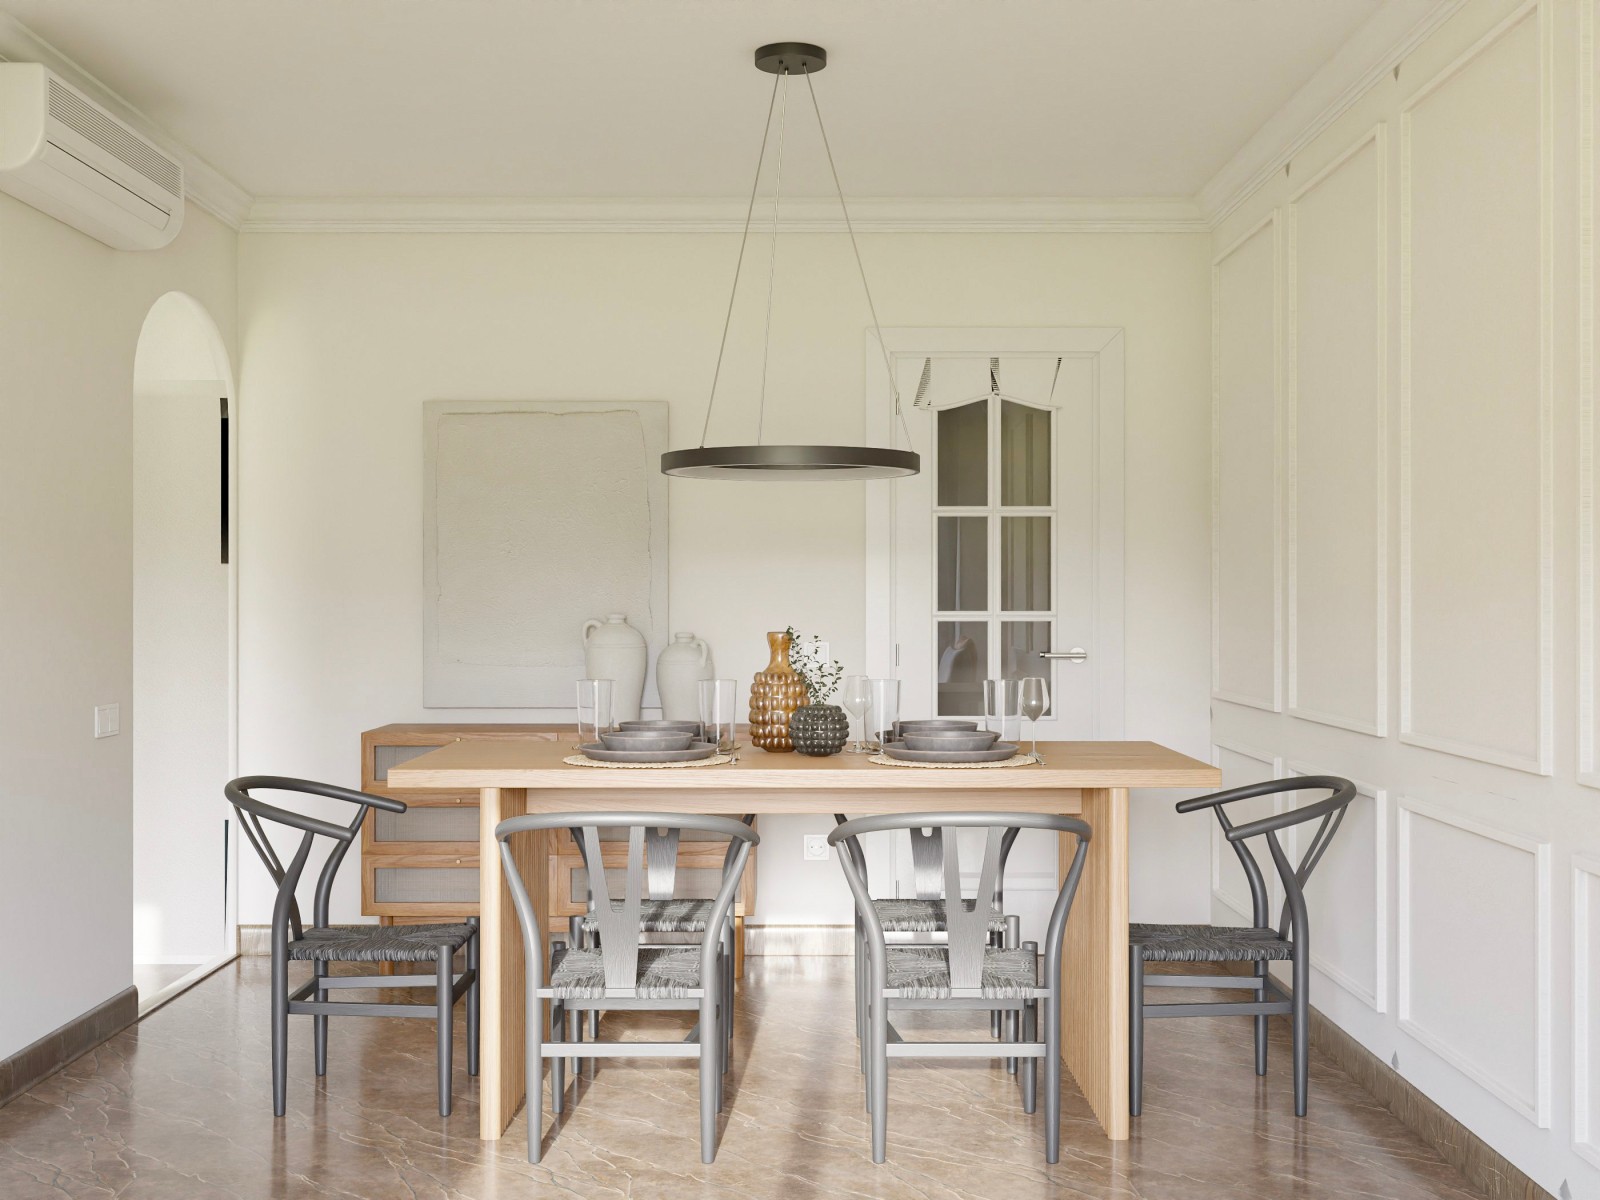 Salón comedor elegante, moderno y minimalista en blanco 